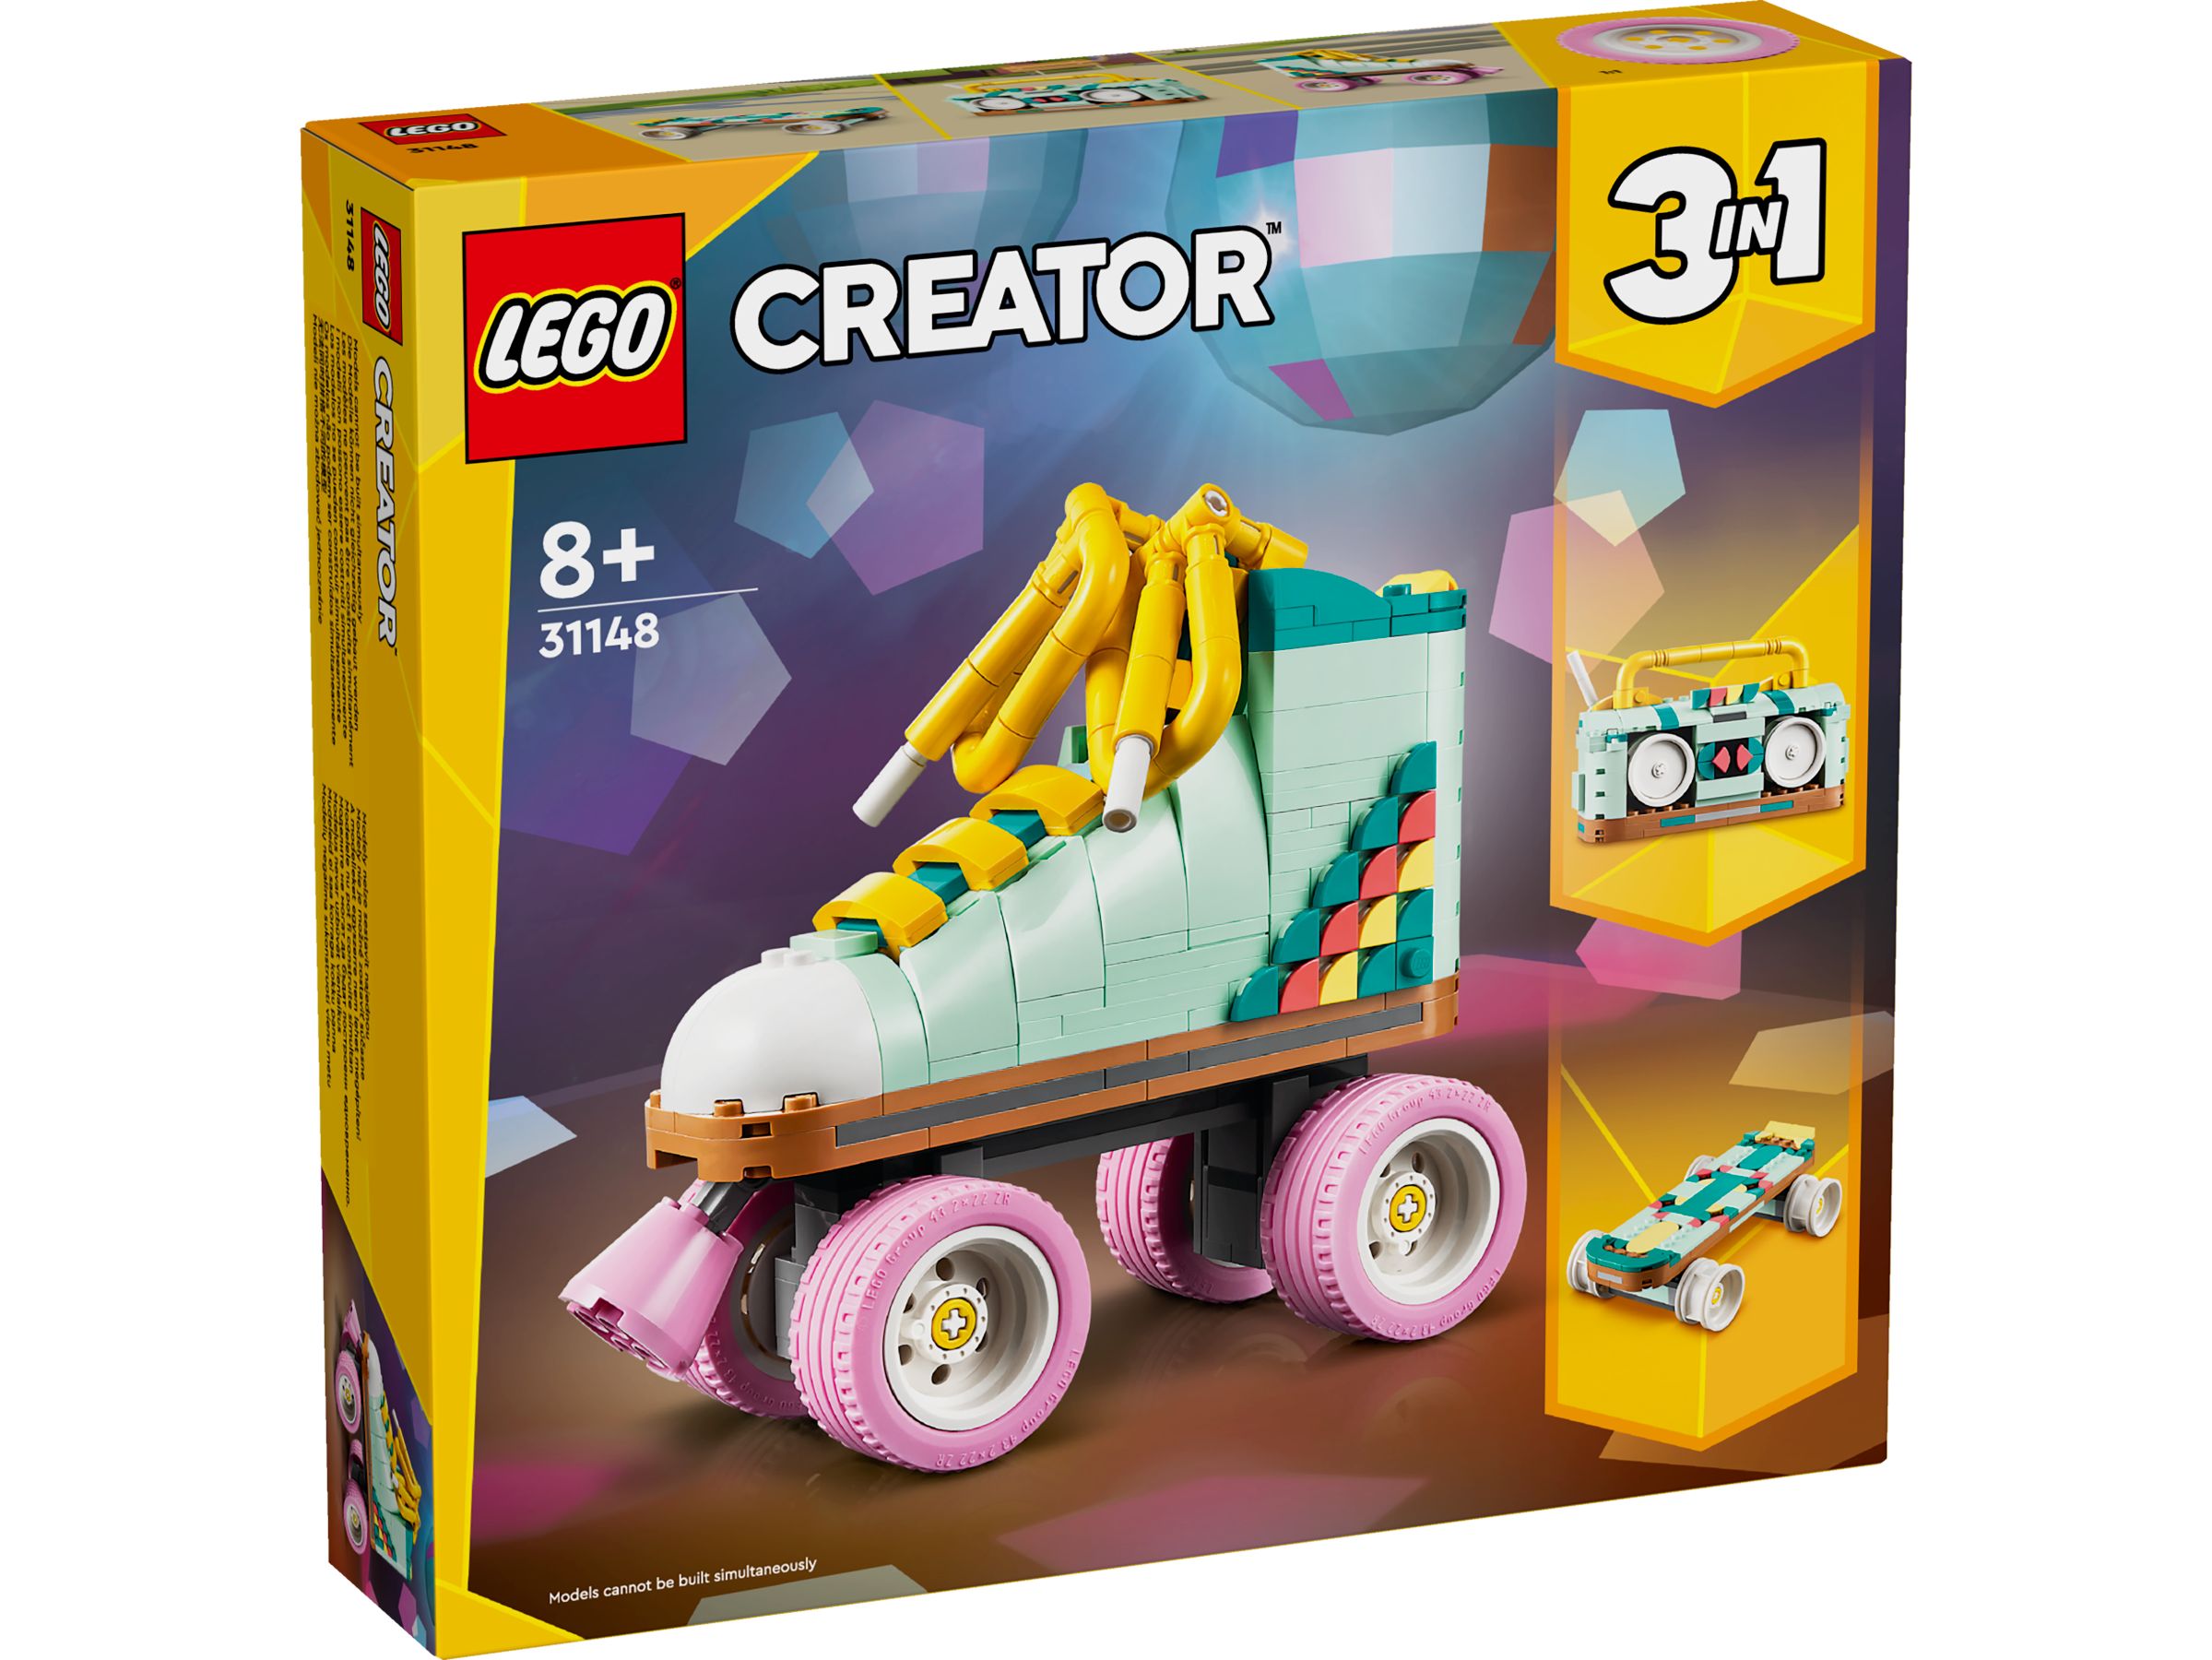 LEGO Creator 31148 Rollschuh LEGO_31148_box1_v29.jpg